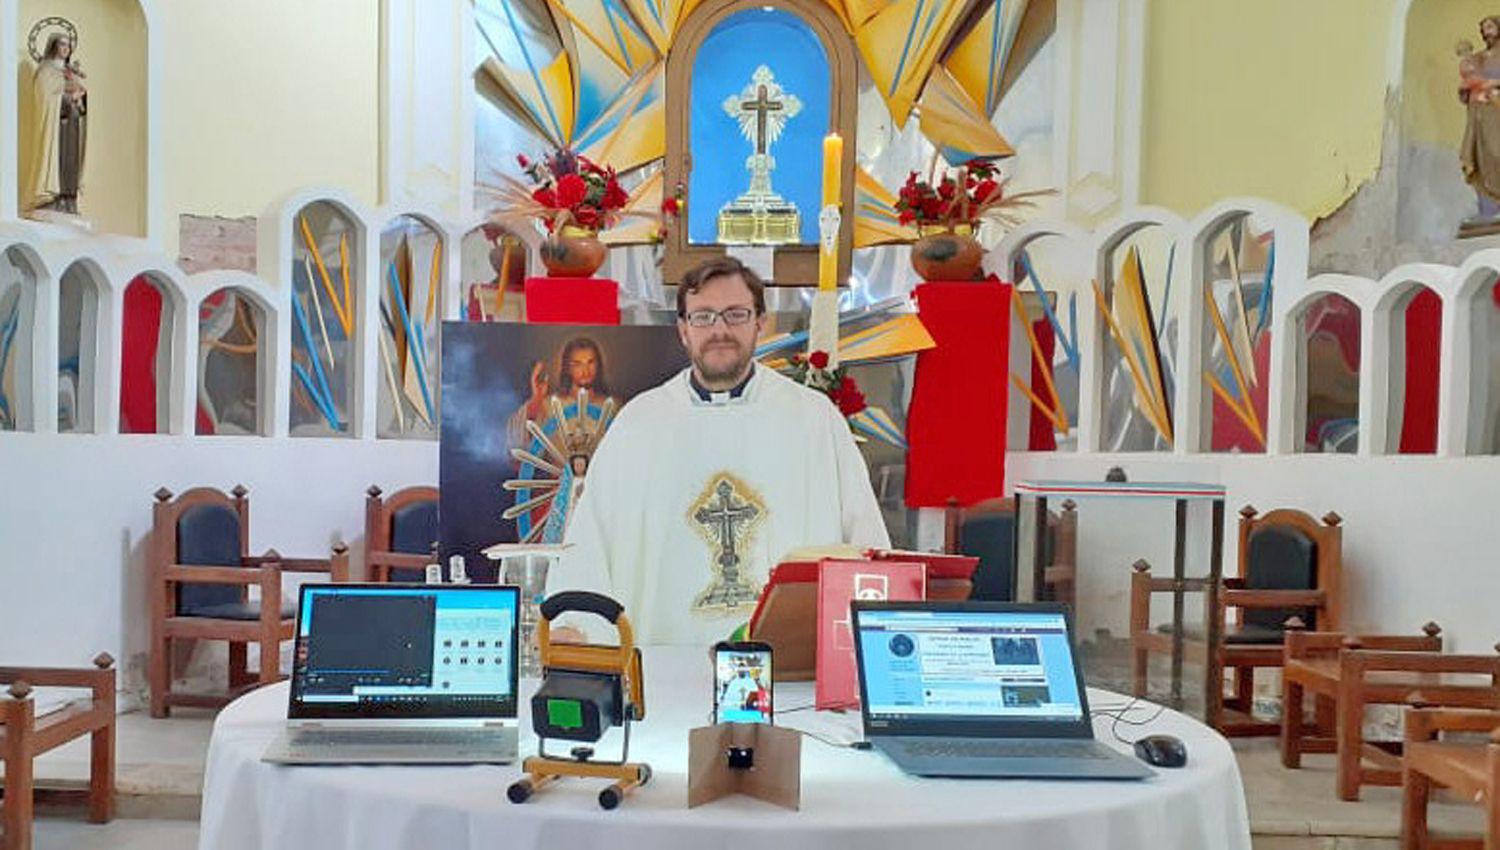 El padre Quinzio oficiar� los rezos y misas los cuales podr�n ser vistos por Facebook